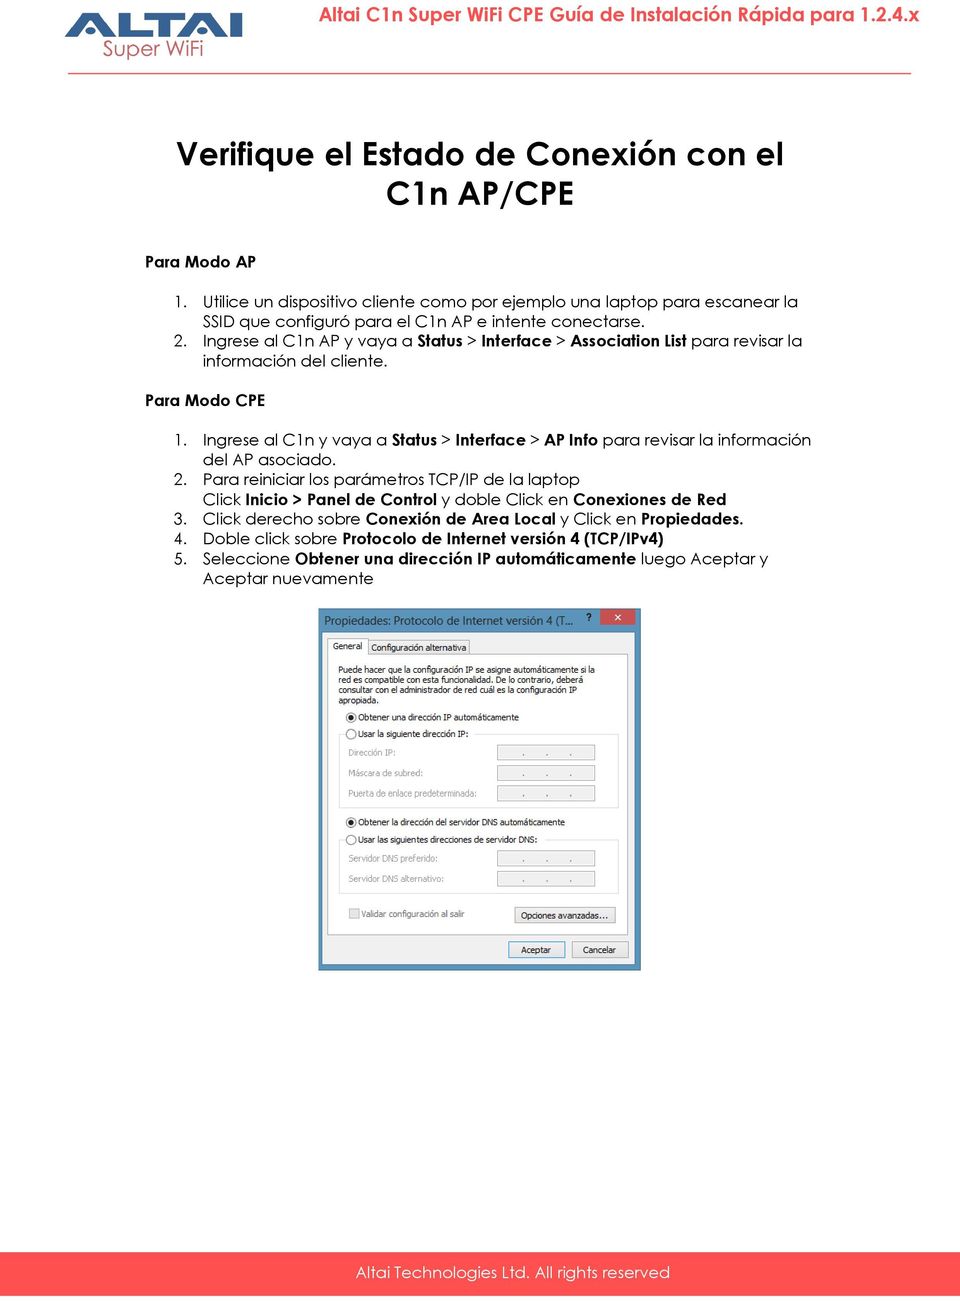 Ingrese al C1n AP y vaya a Status > Interface > Association List para revisar la información del cliente. Para Modo CPE 1.